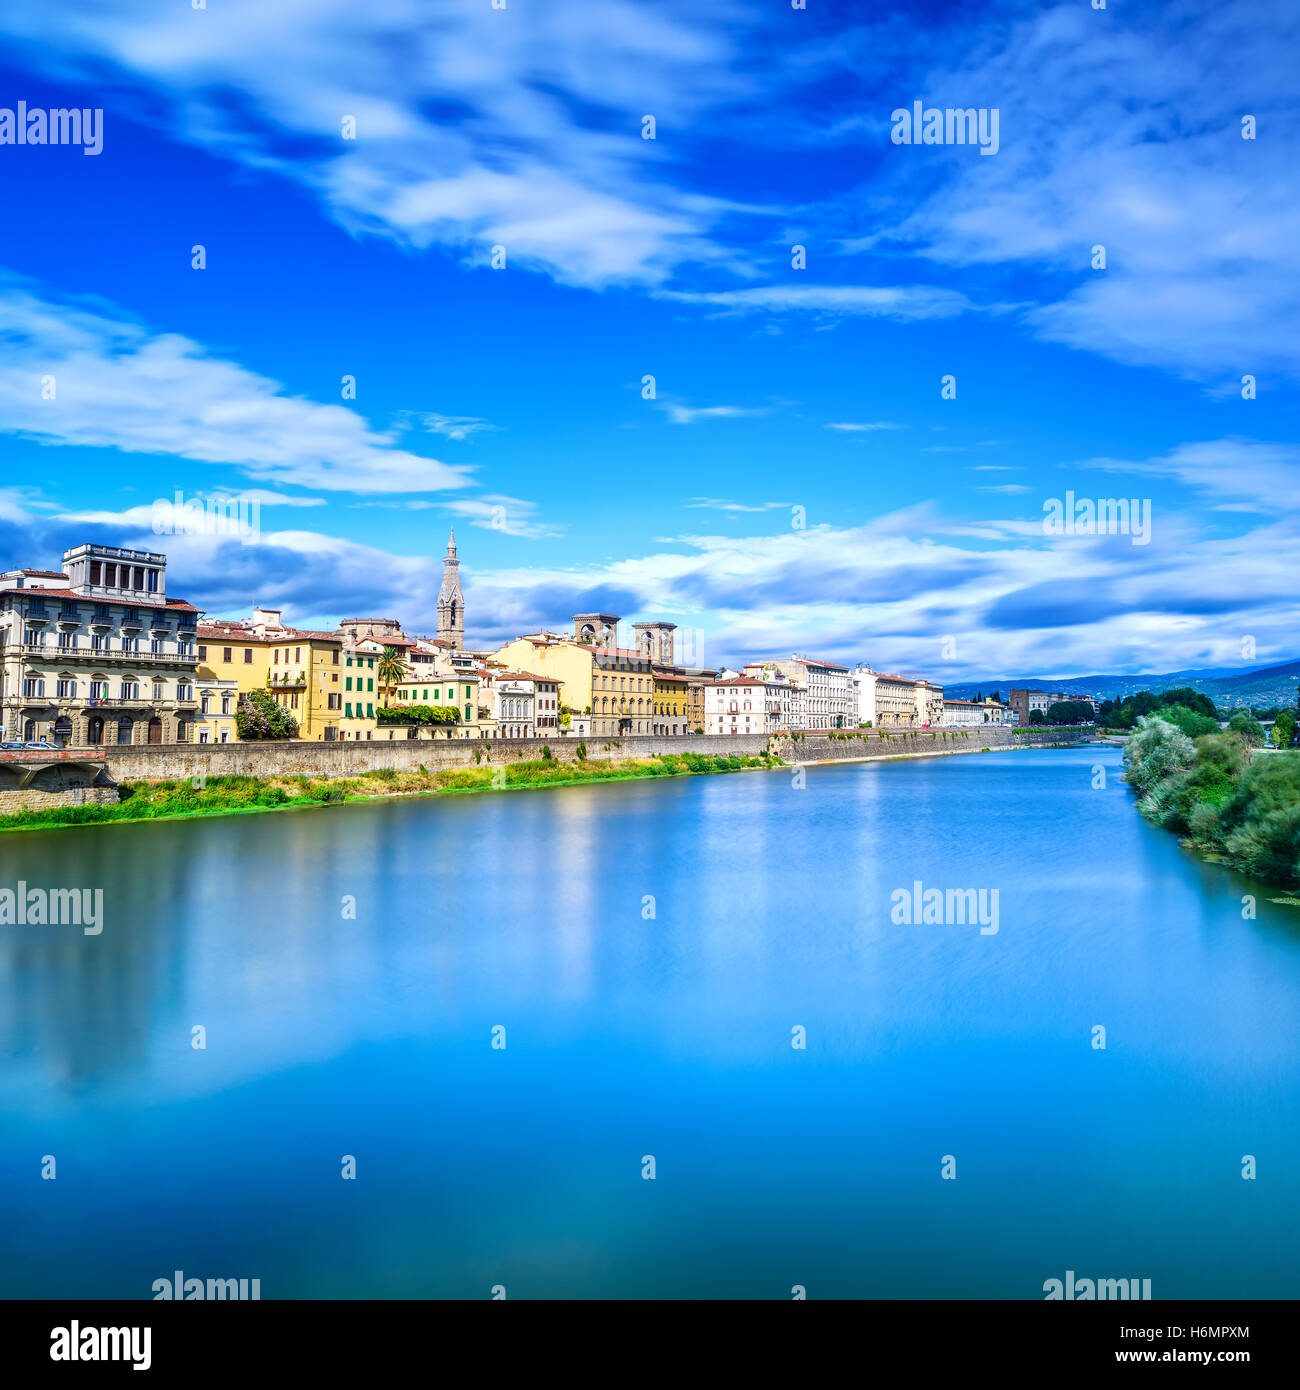 Florenz oder Firenze, Fluss Arno, Sonnenuntergang Landschaft. Toskana, Italien. Langzeitbelichtung. Stockfoto